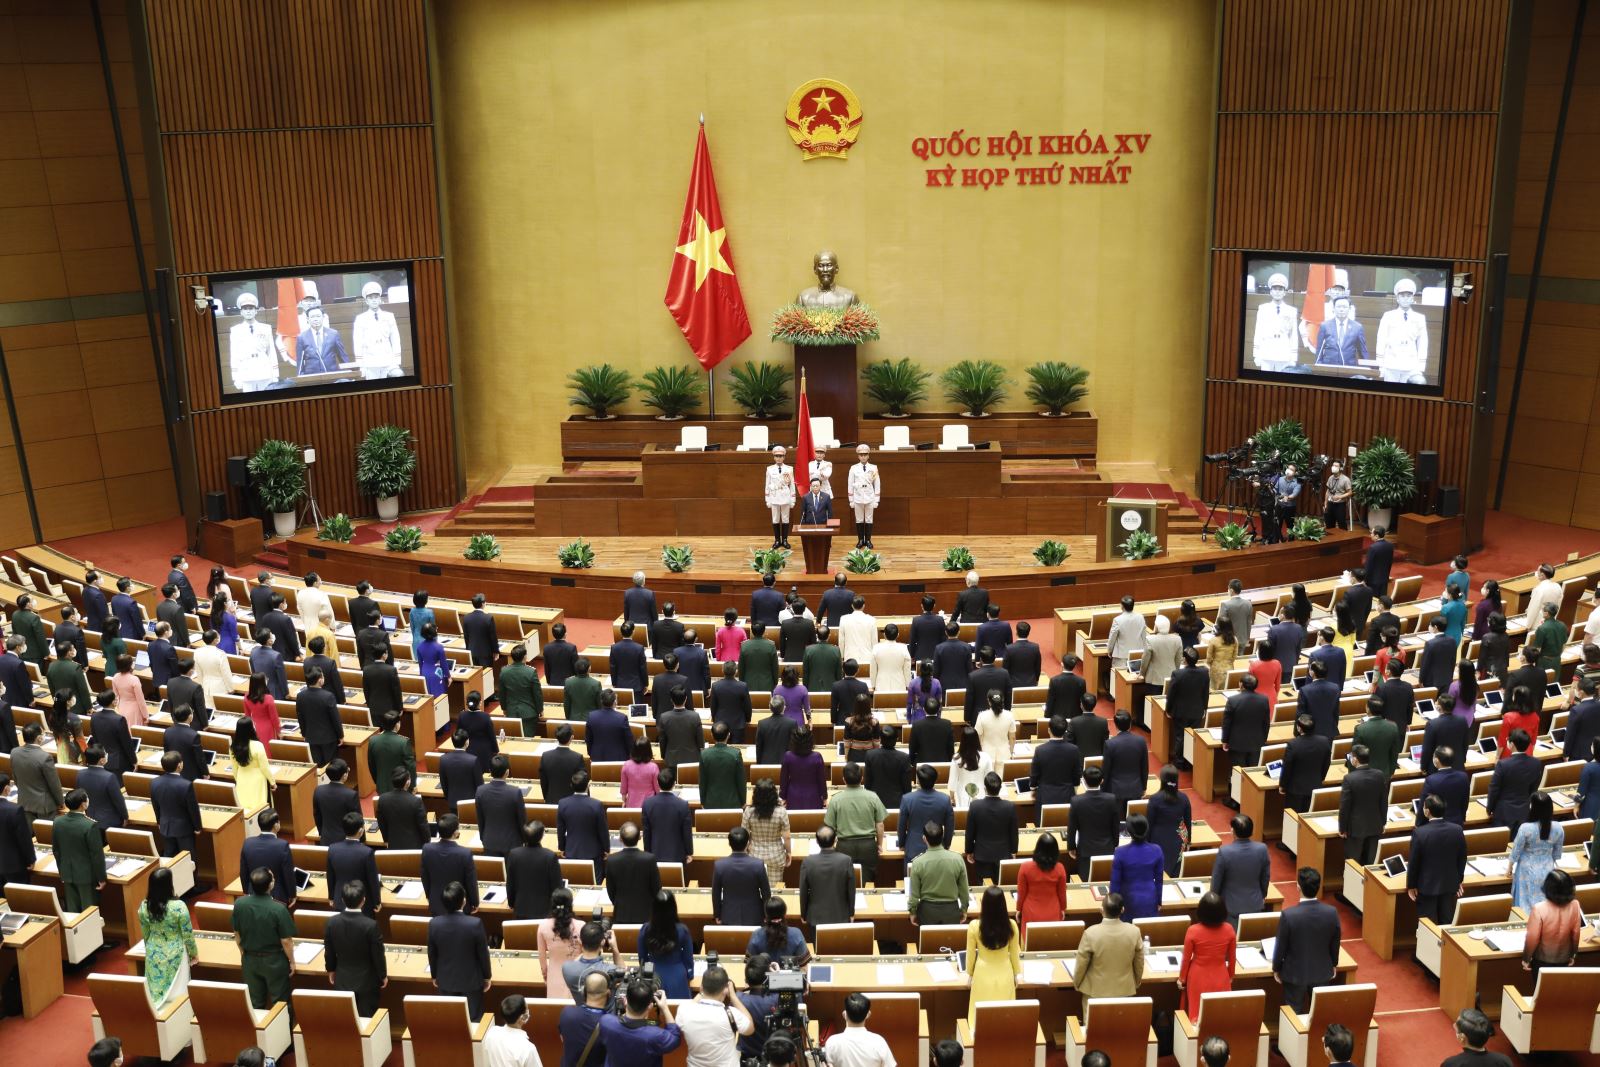 Quang cảnh Lễ tuyên thệ nhậm chức của Chủ tịch Quốc hội Vương Đình Huệ chiều 20/7/2021 Ảnh: Dương Giang/TTXVN.